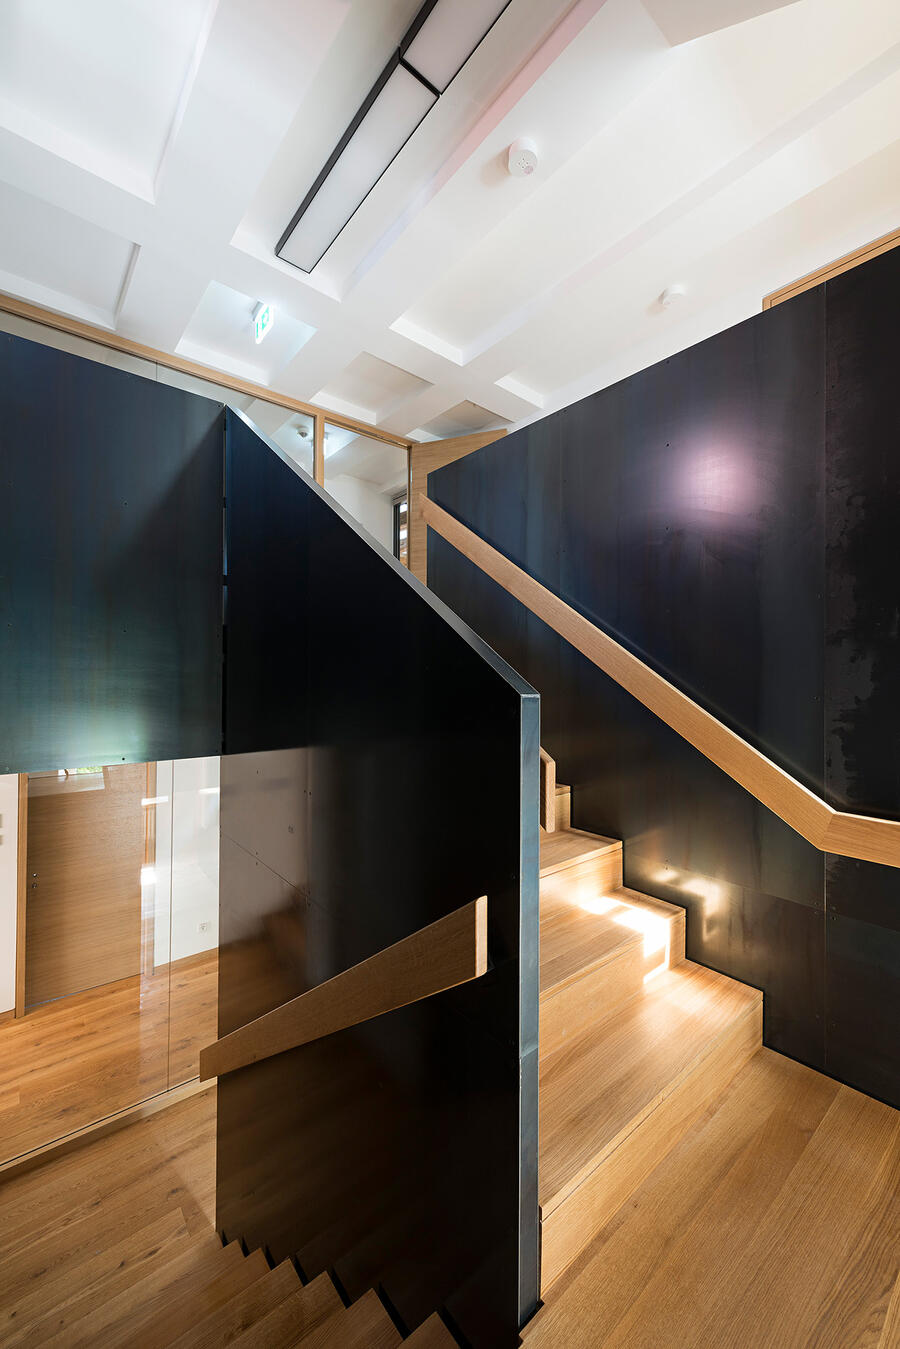 Ein Treppenaufgang mit schwarzen massiven Wänden. An den halbhohen Wänden sind helle Holzleisten als Geländer befestigt. Die Treppenstufen sind ebenfalls mit hellem Holz ausgelegt.